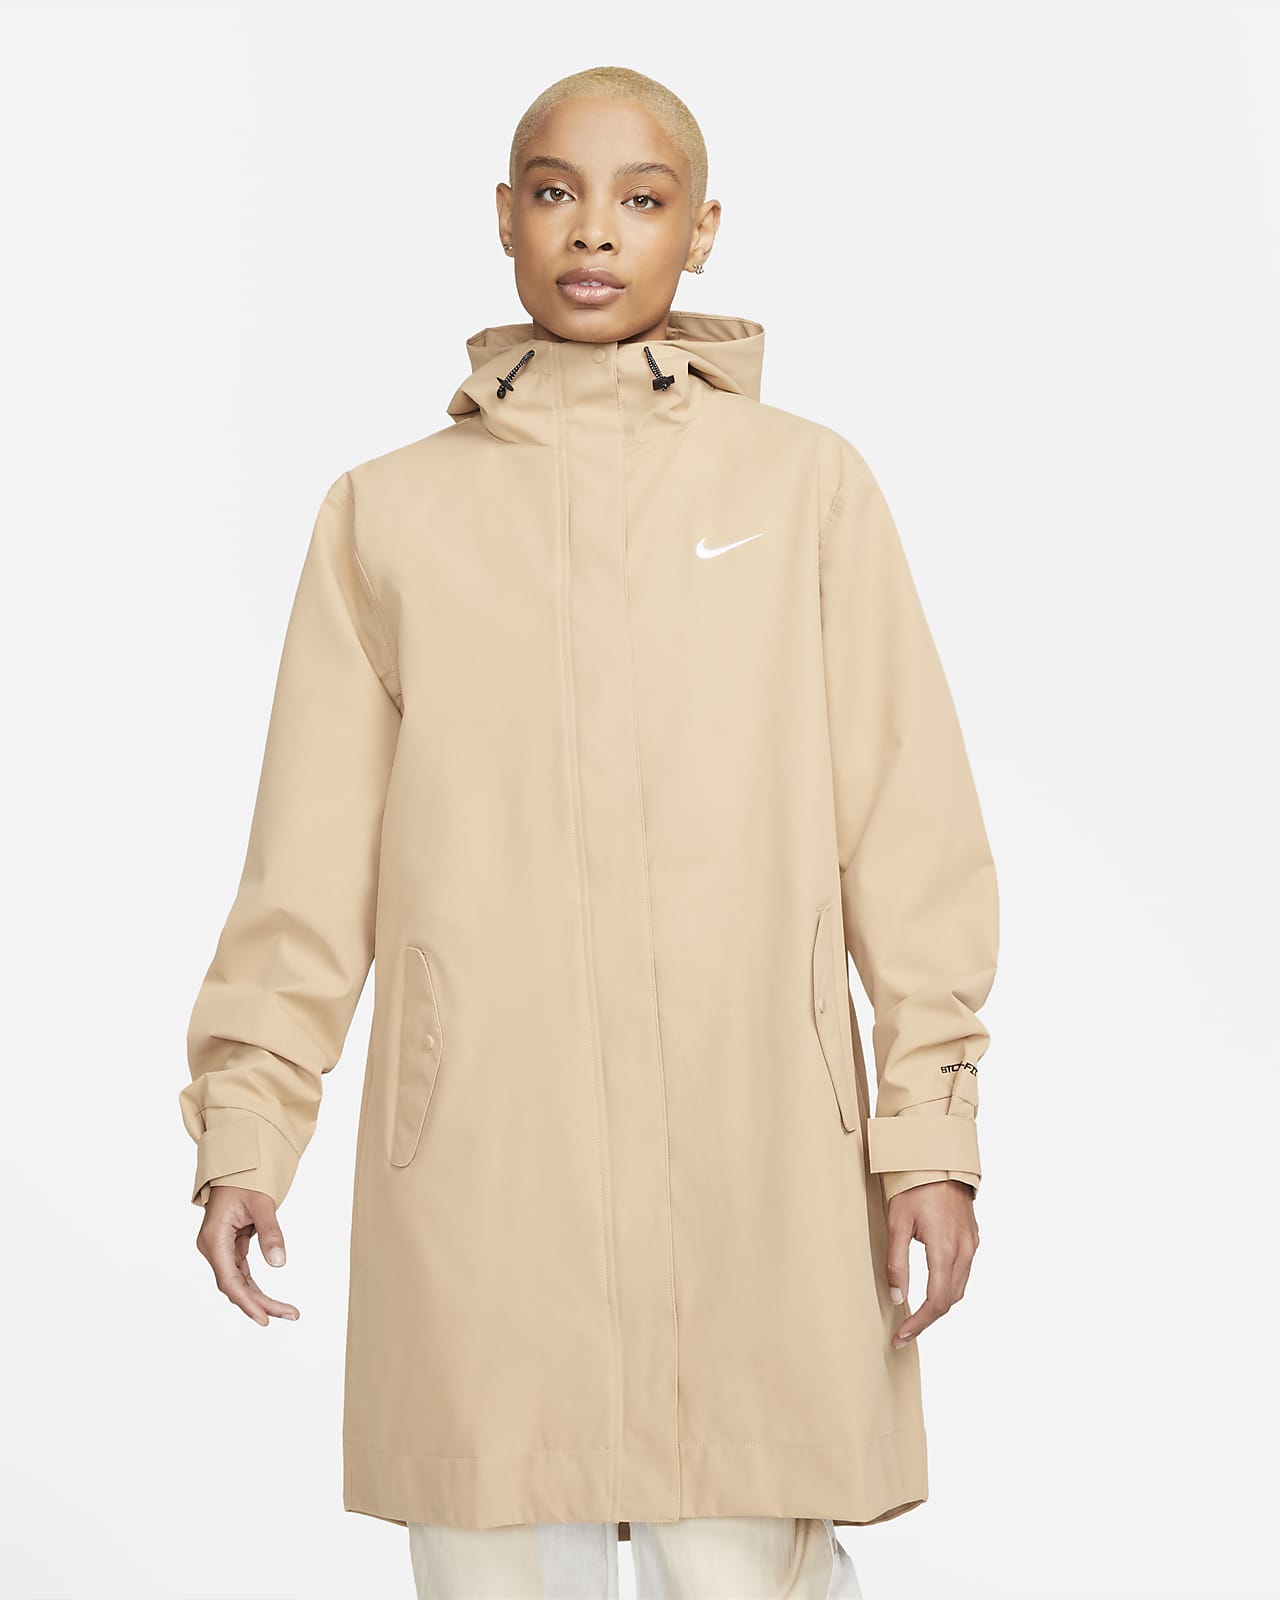 Nike Sportswear Essential Storm-FIT Women's Woven Parka Jacket